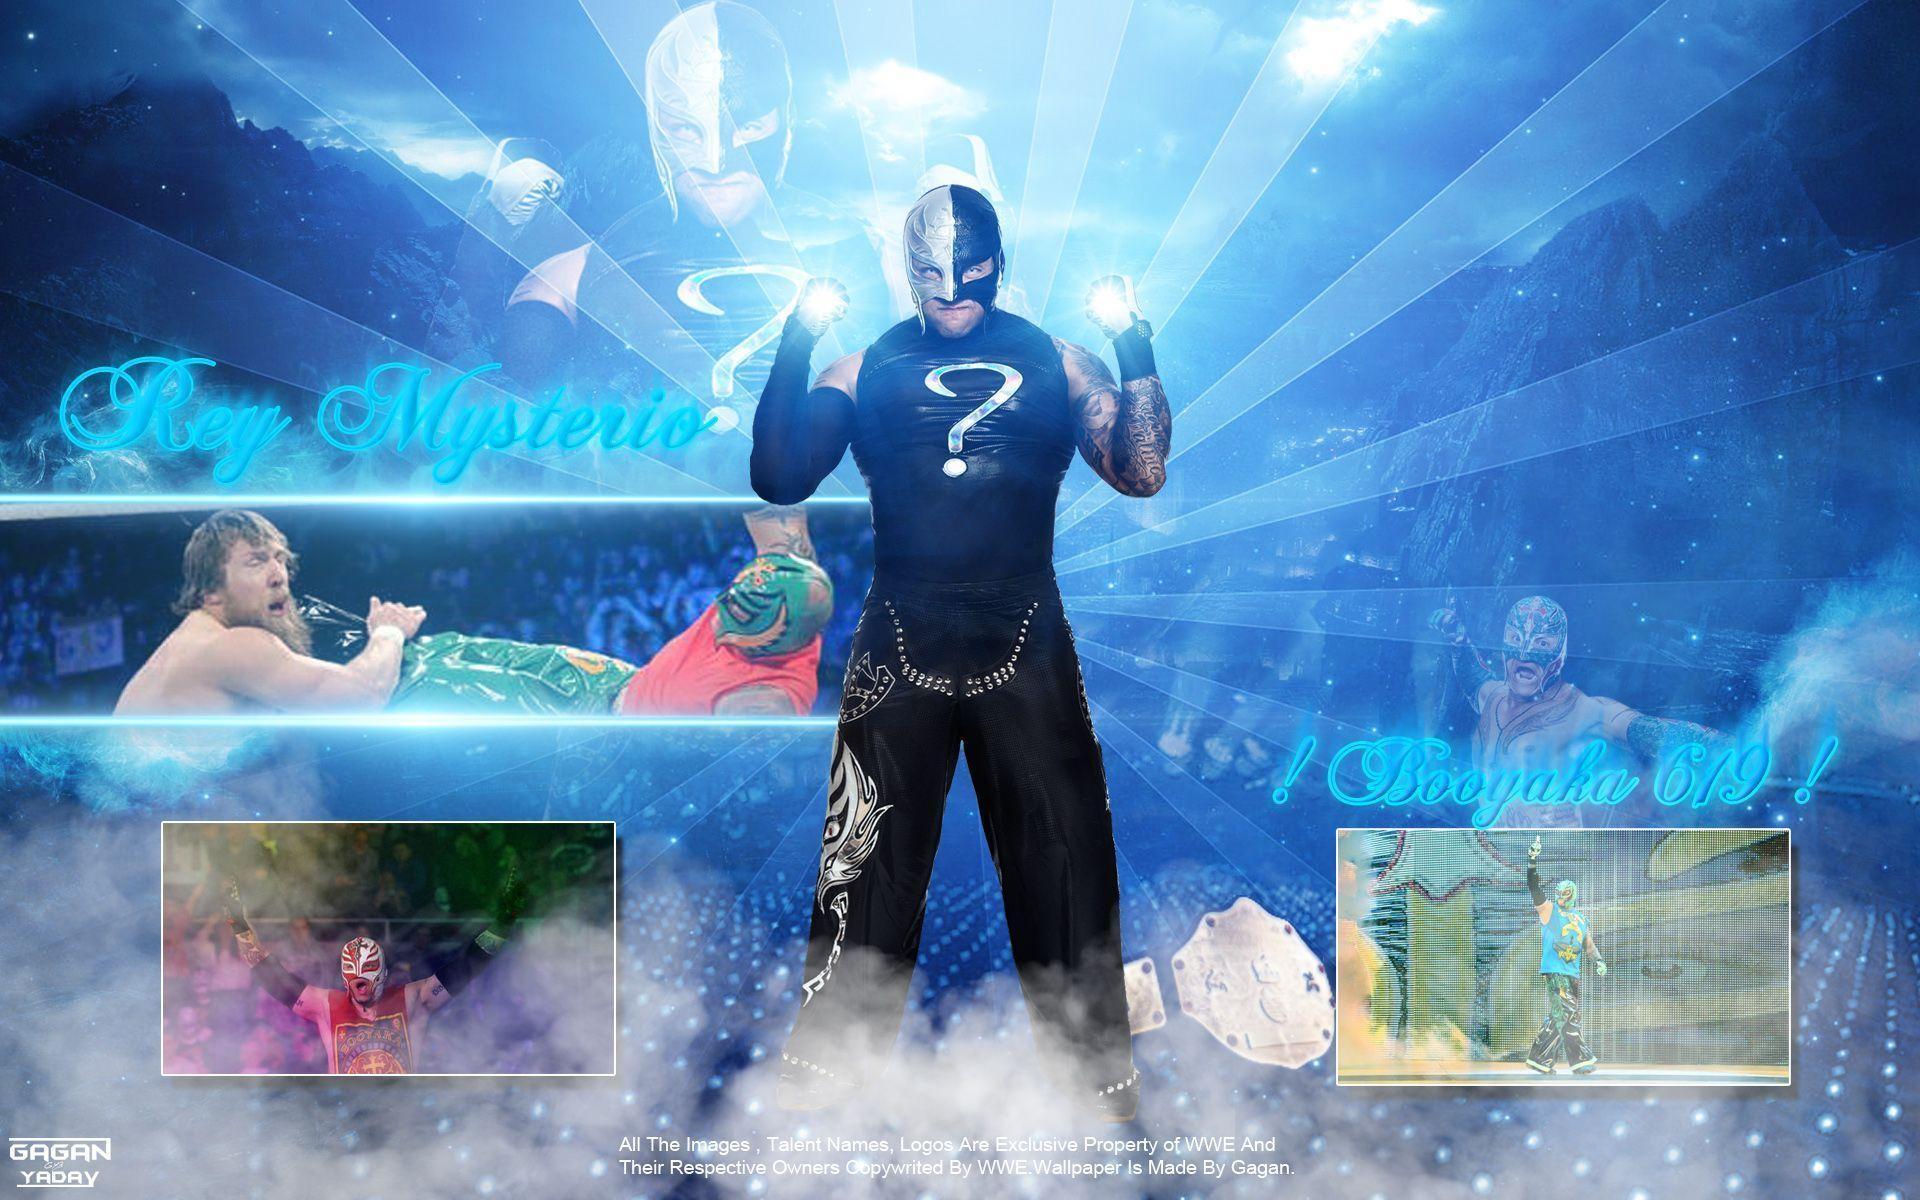 Rey Mysterio 2015 Full HD Wallpaper